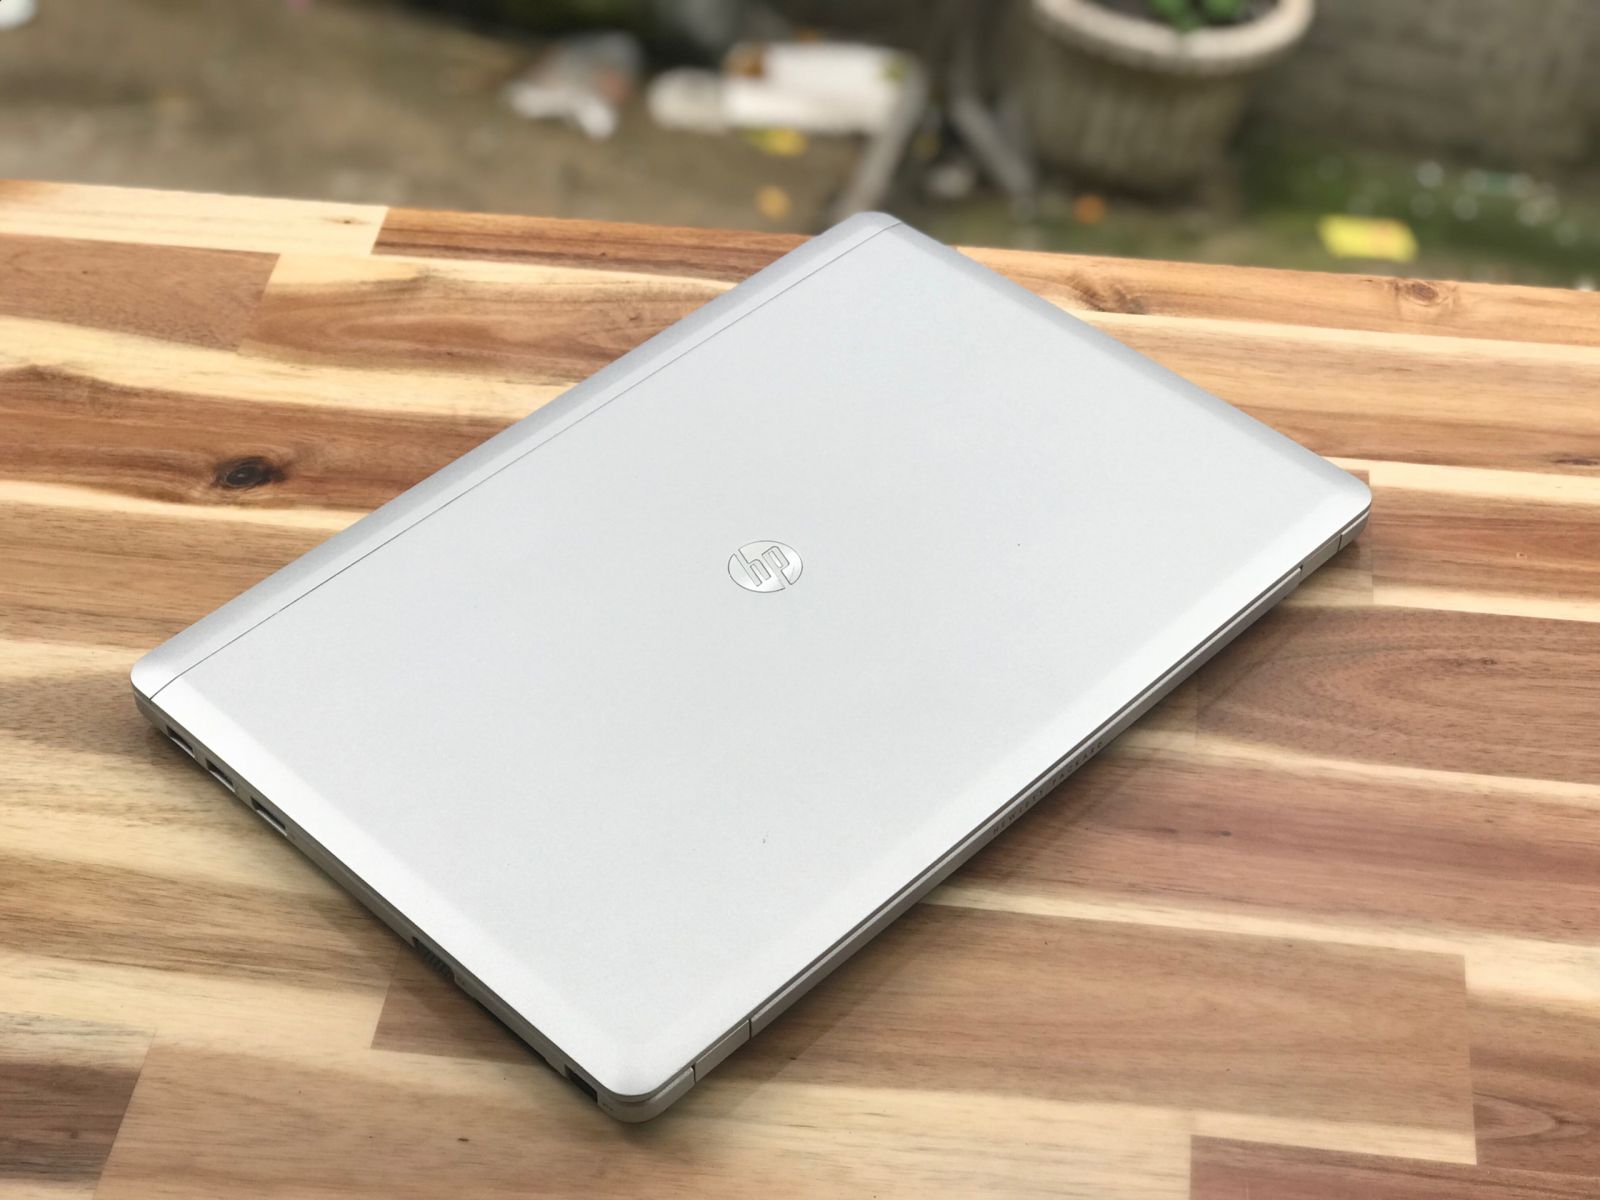 Hình ảnh HP Folio 9480M Core i7 4600U giá rẻ của Laptop Minh Mẫn